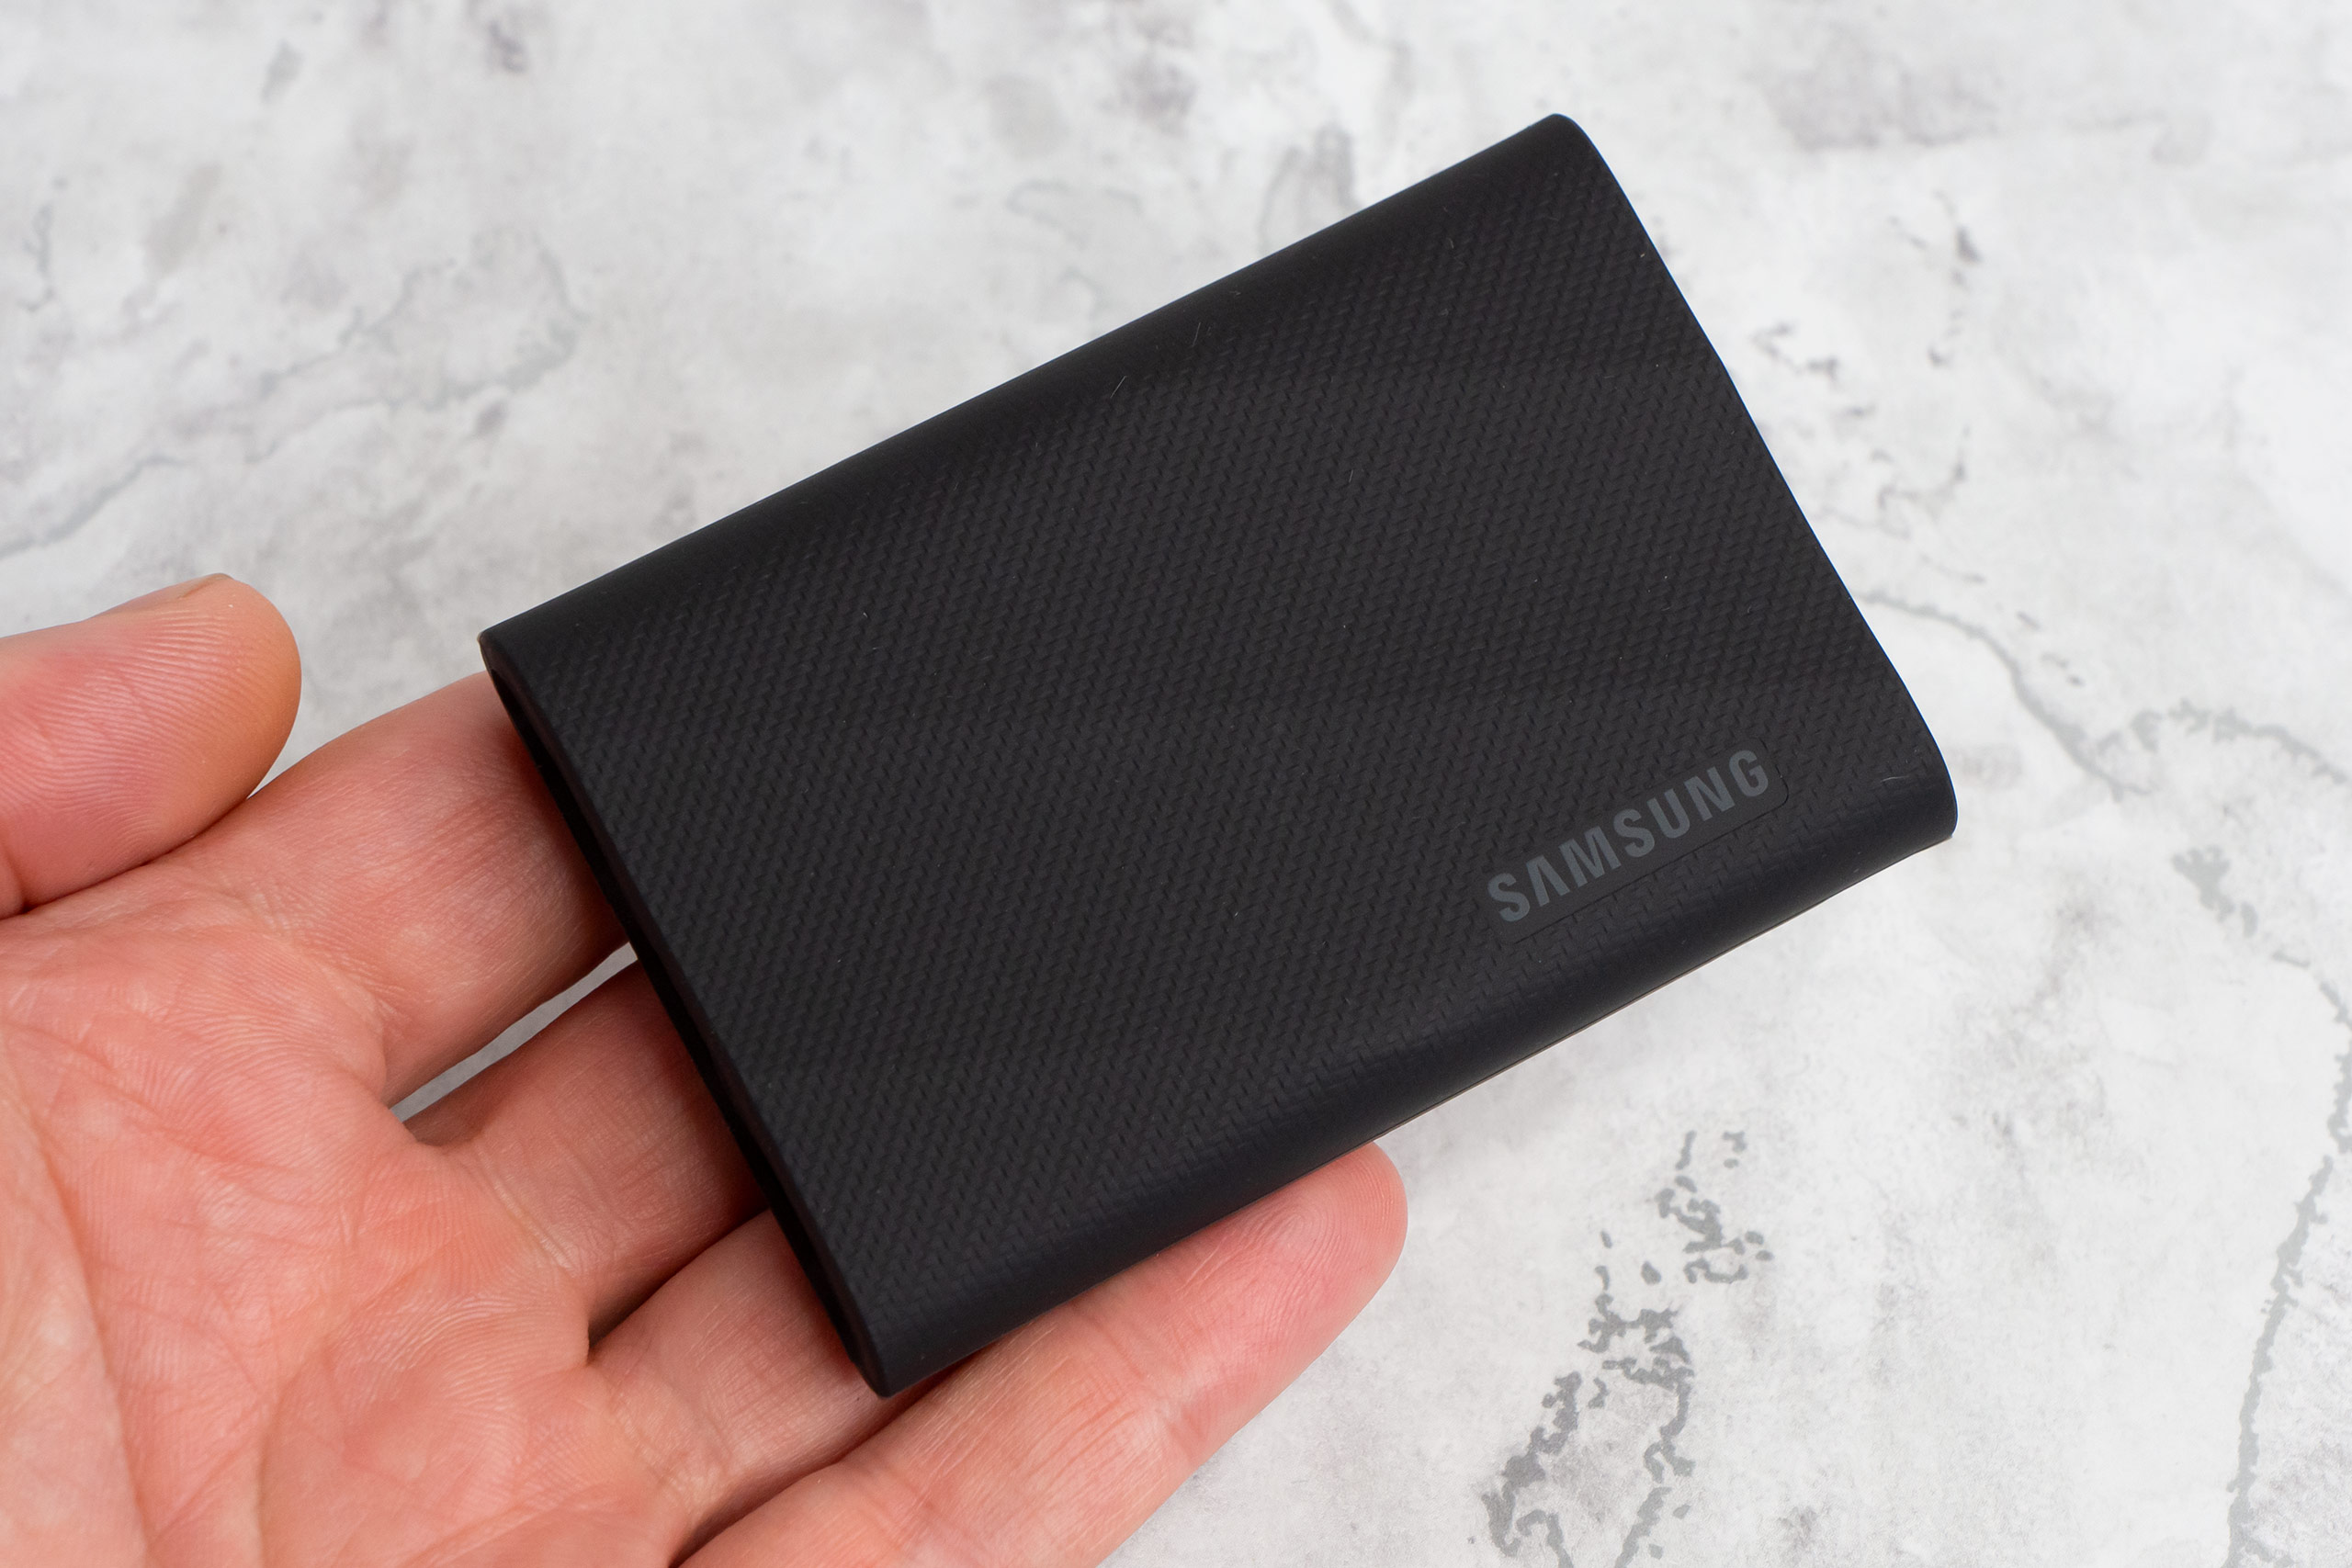 Samsung Portable SSD T9 2TB Review - Amateur Photographer